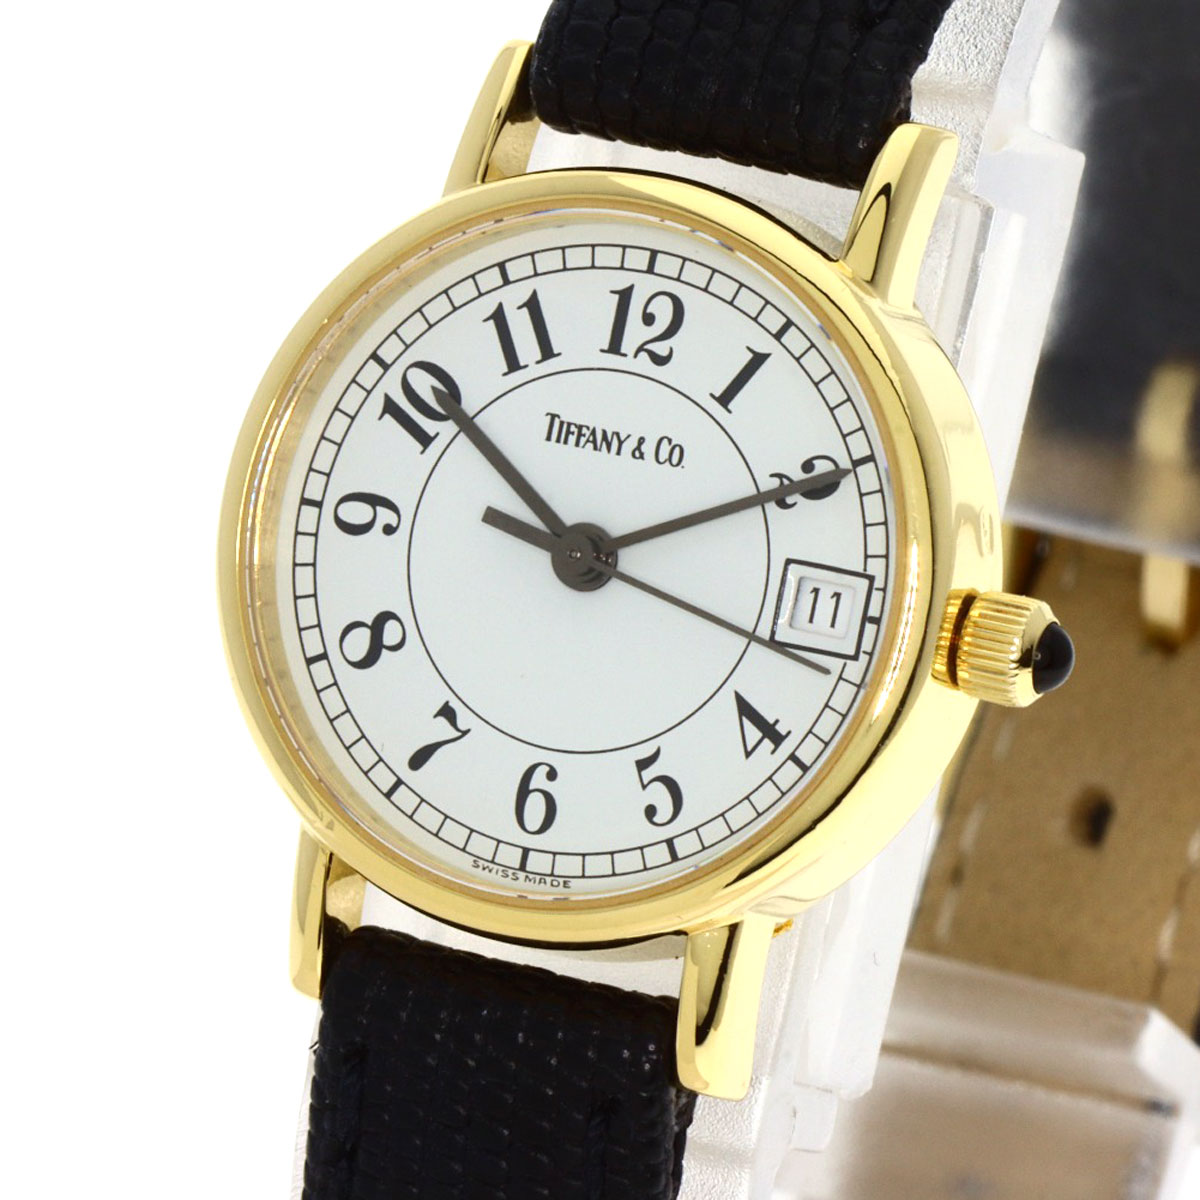 ティファニークォーツ腕時計 お気に入り - rotary4560.org.br